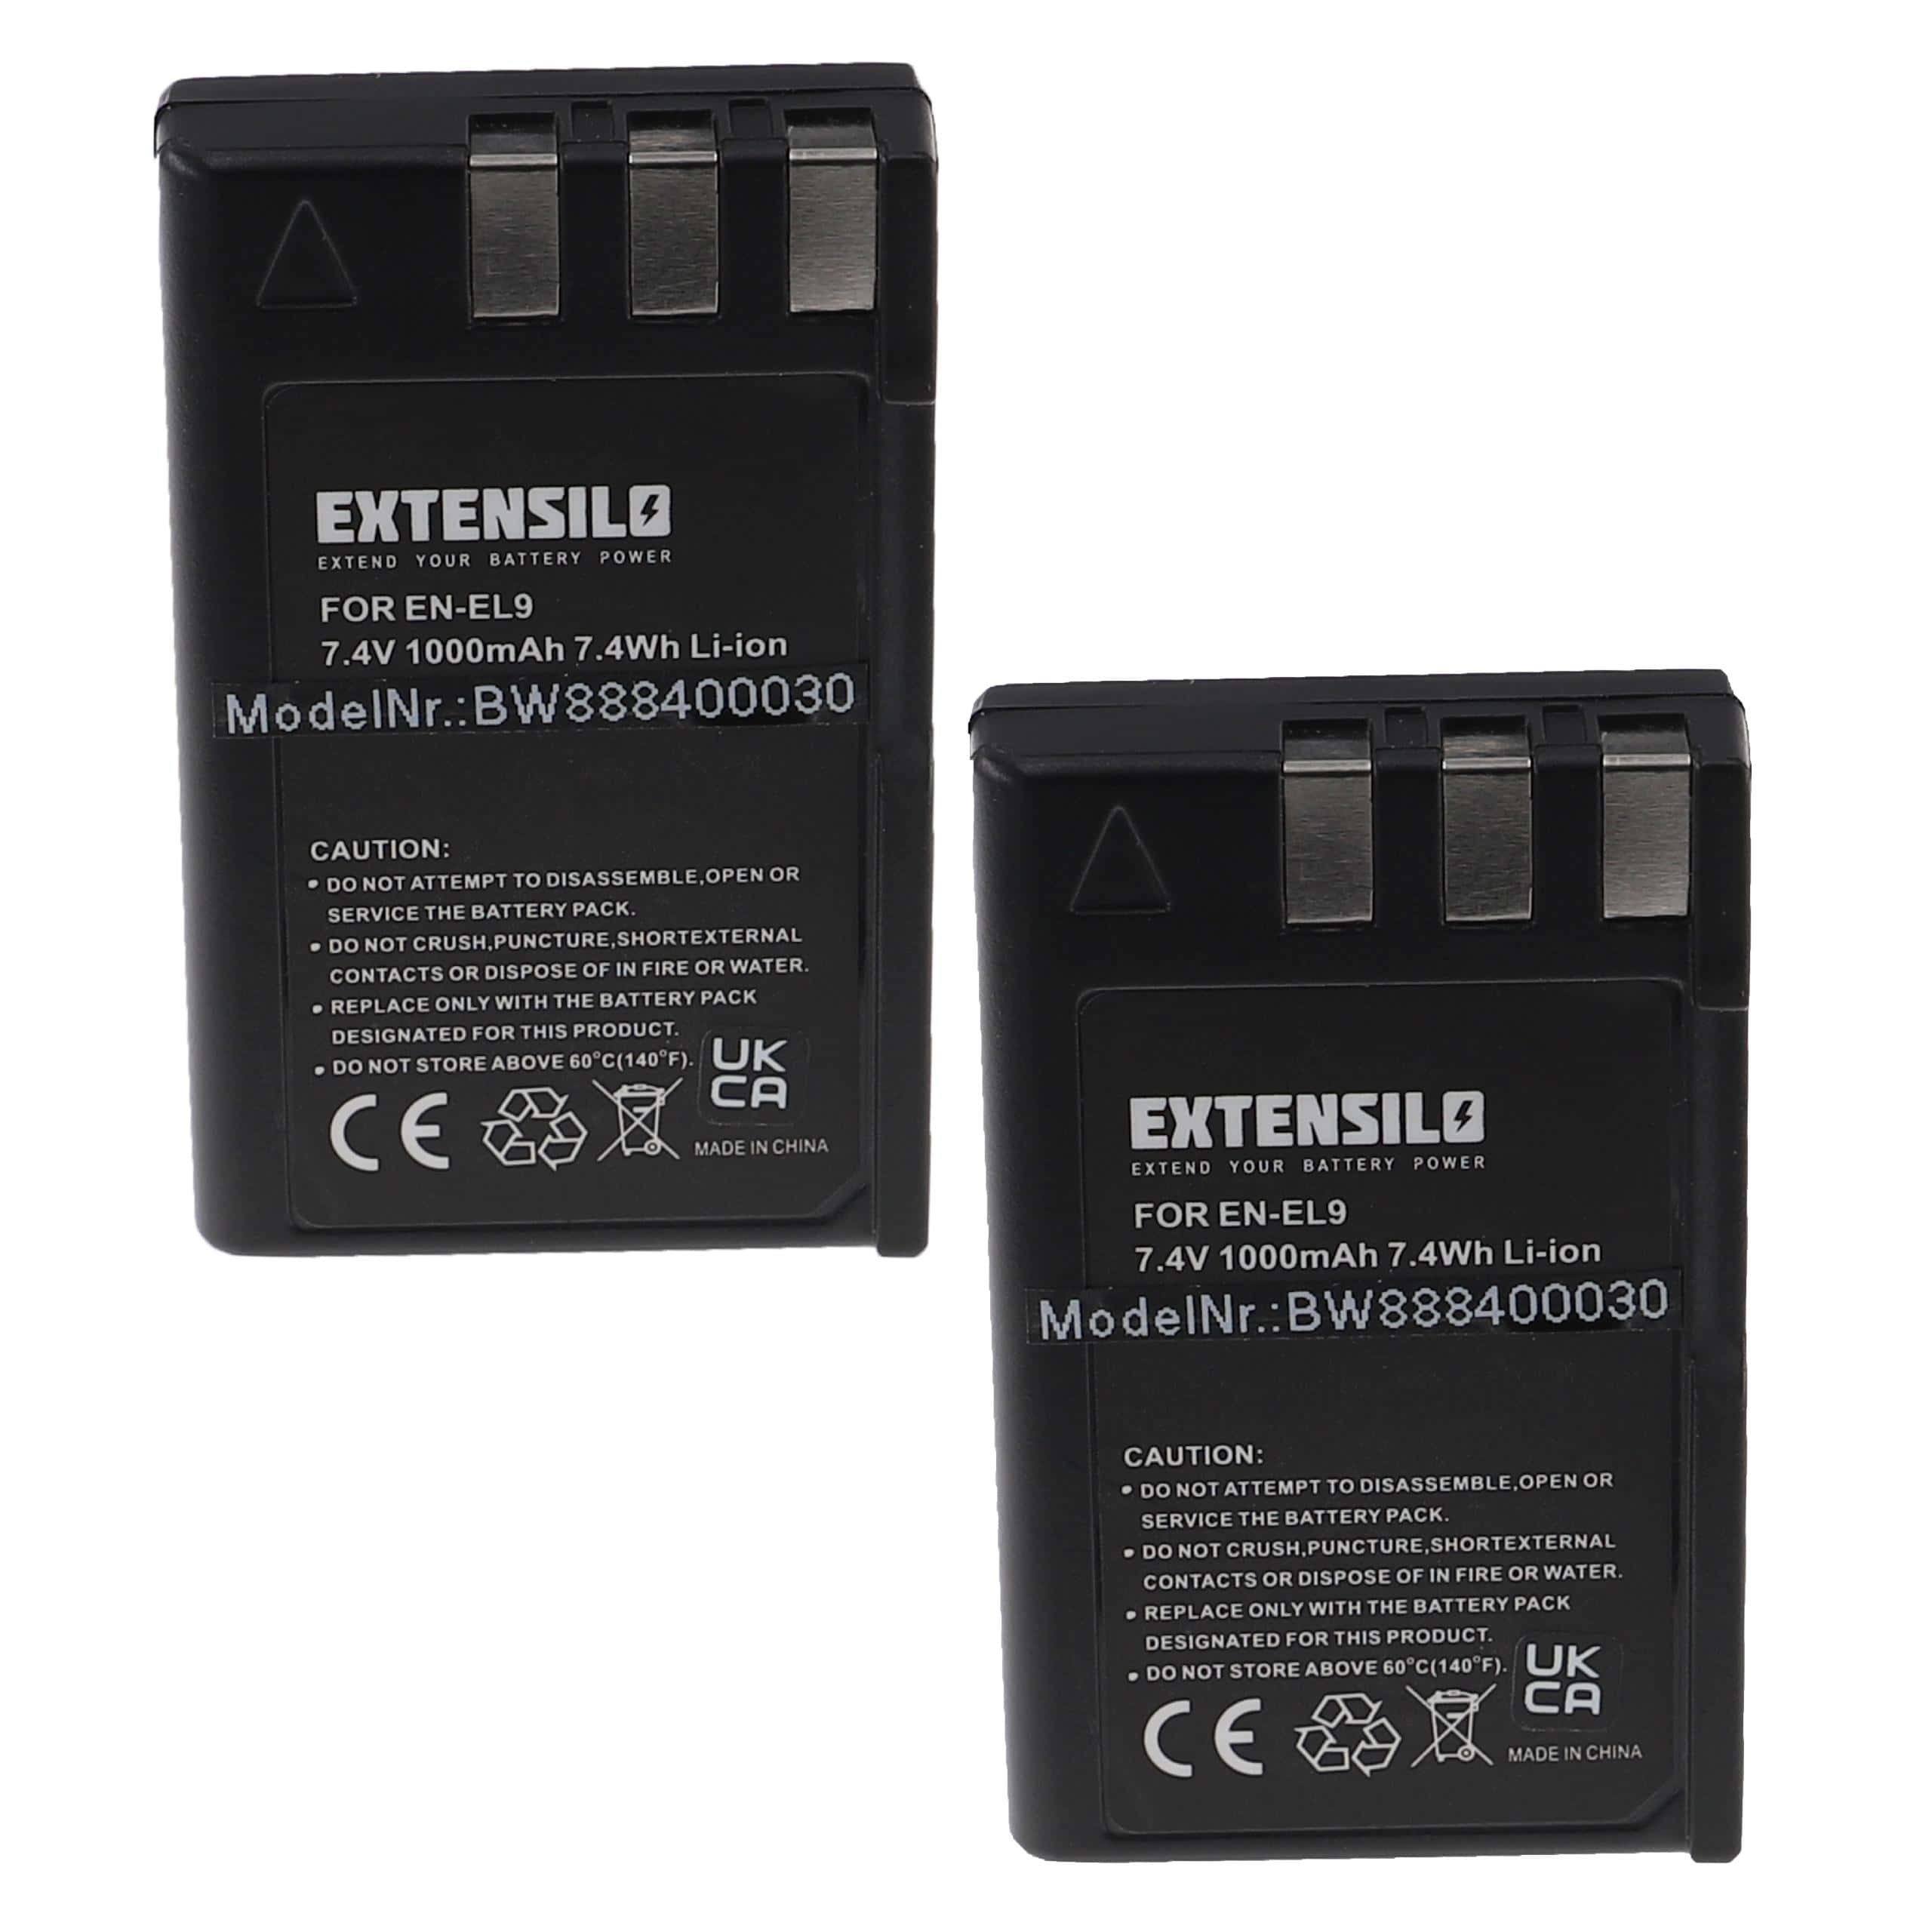 Battery (2 Units) Replacement for Nikon EN-EL9E, EN-EL9 - 1000mAh, 7.4V, Li-Ion